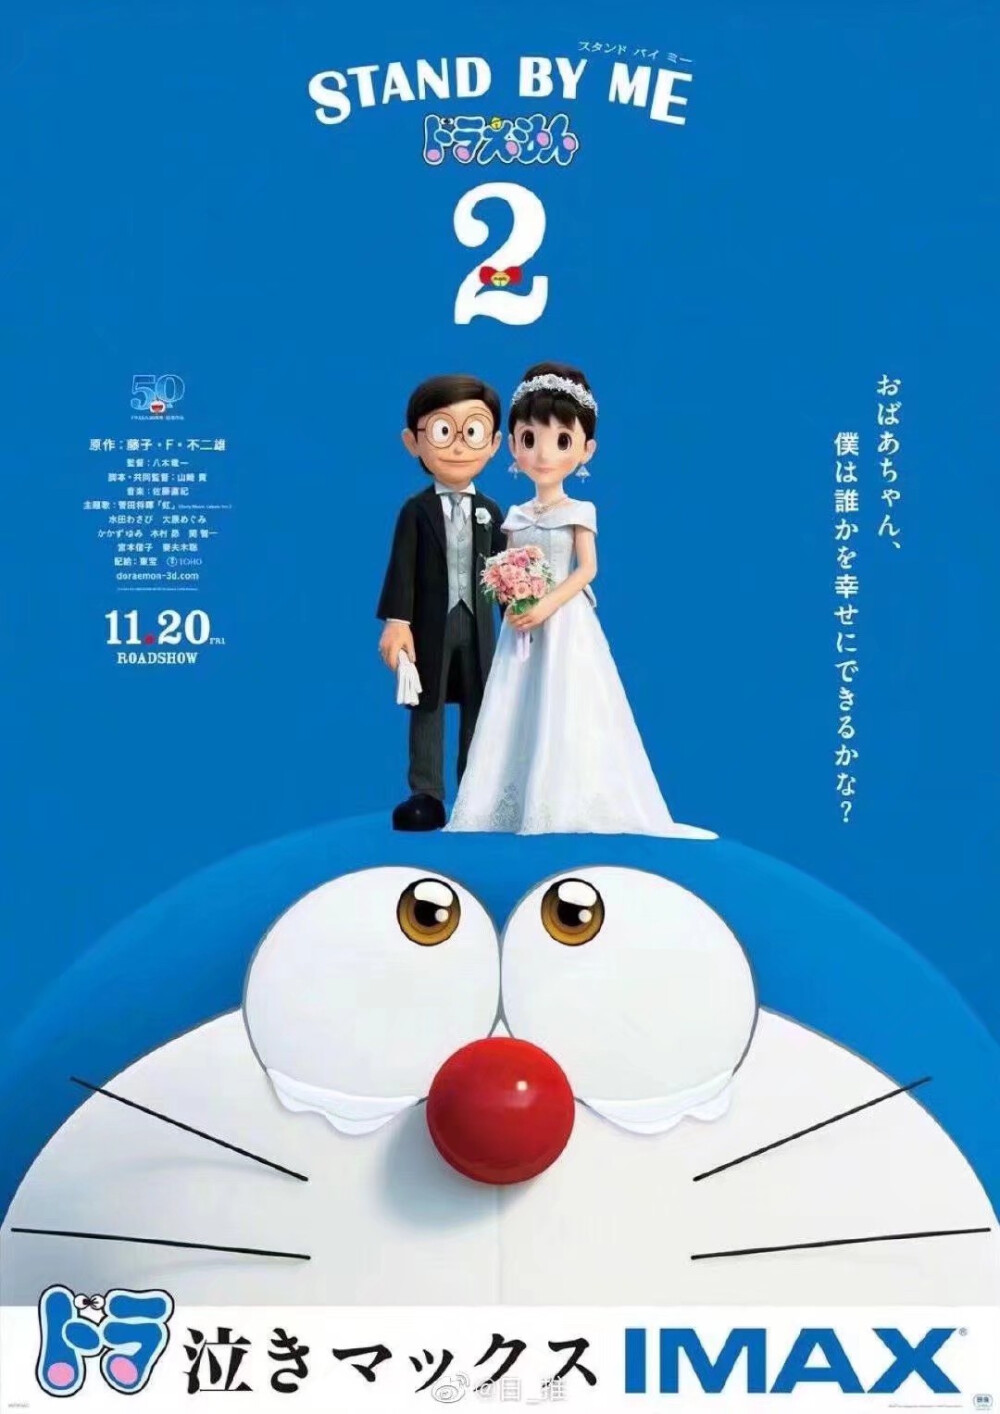 『哆啦a梦 伴我同行2』新海报公开,主题歌担当:菅田将晖